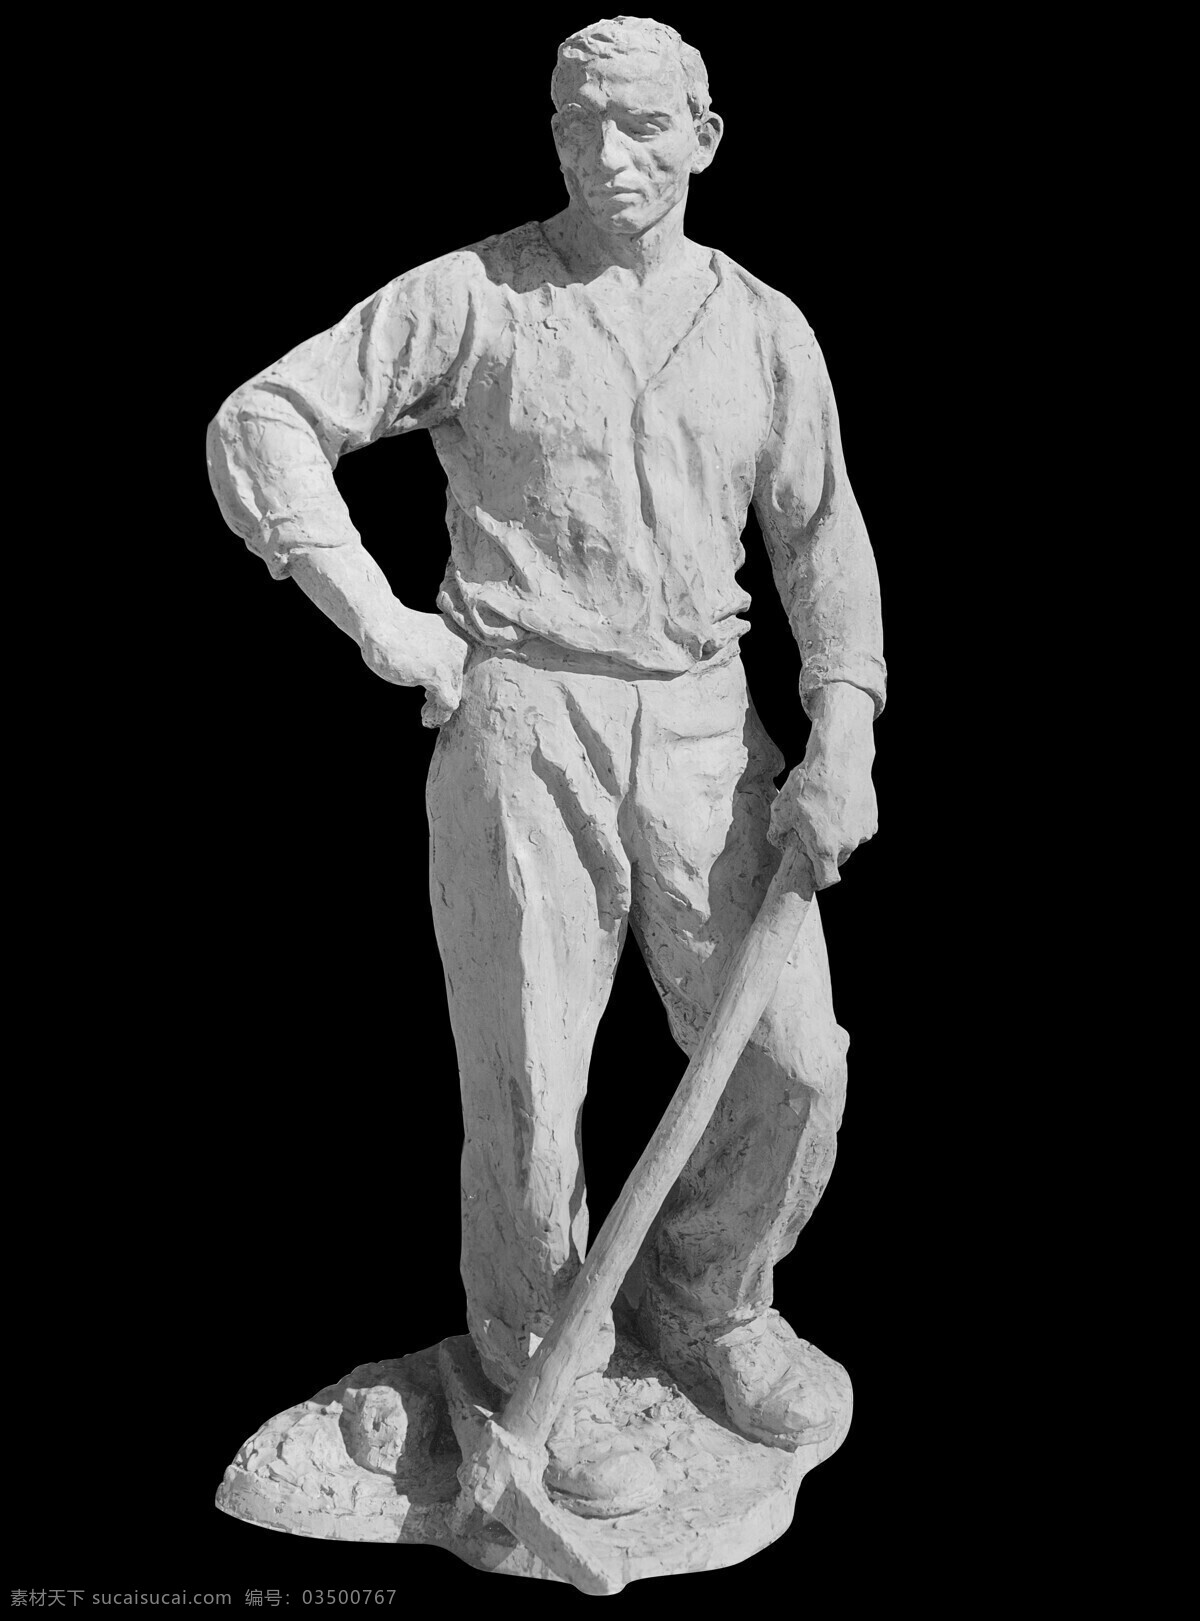 农民雕塑 欧式雕塑 石雕 塑像 雕塑 雕像 石像 男人 农民 锄头 雕塑雕像素材 文化艺术